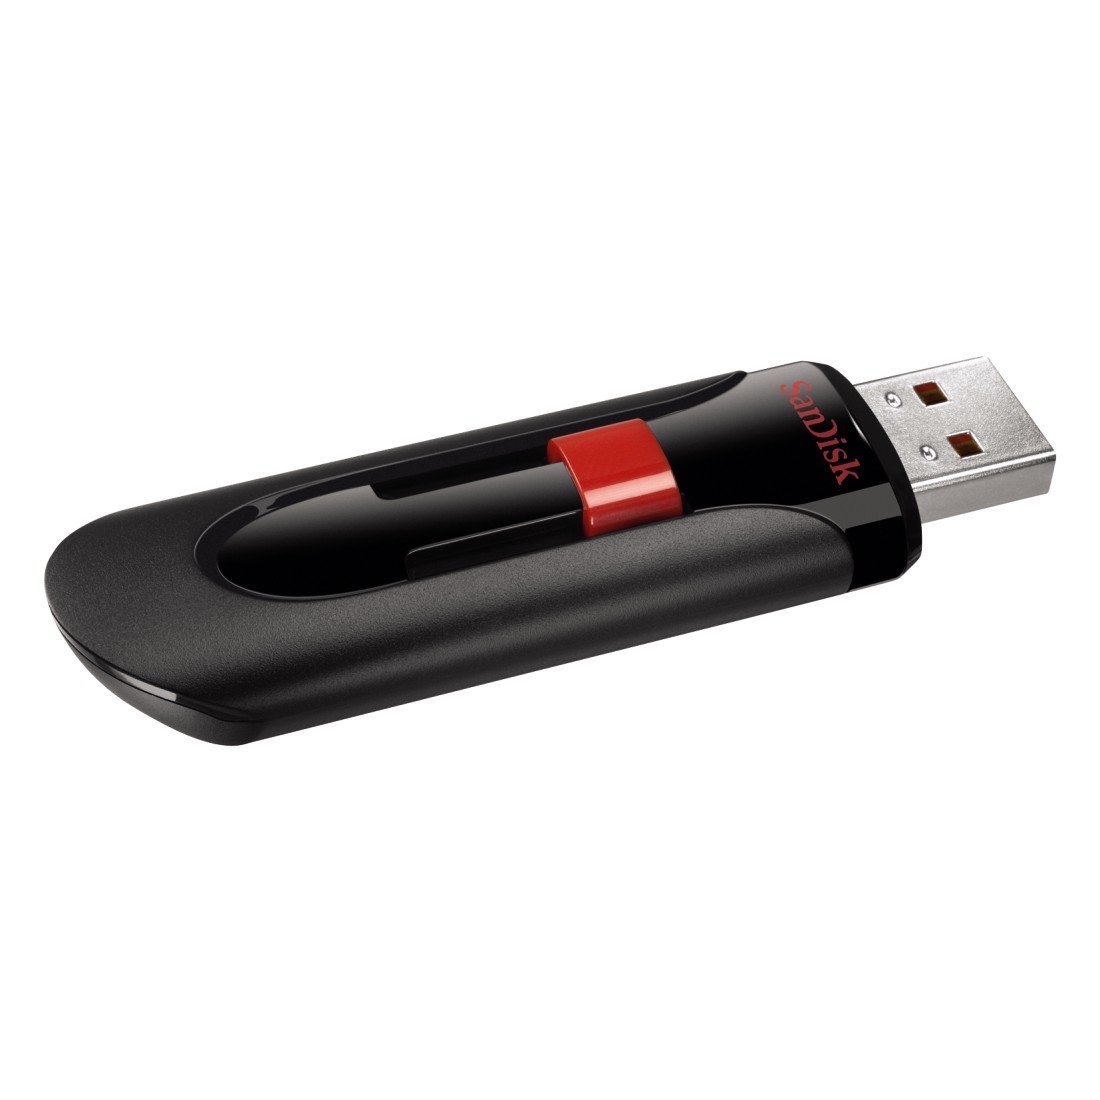 2 Pack 16GB - Red Purple XinwaY USB Flash Drive 16GB Memory Stick Thumb Drive Swivel Design Jump Drive, 